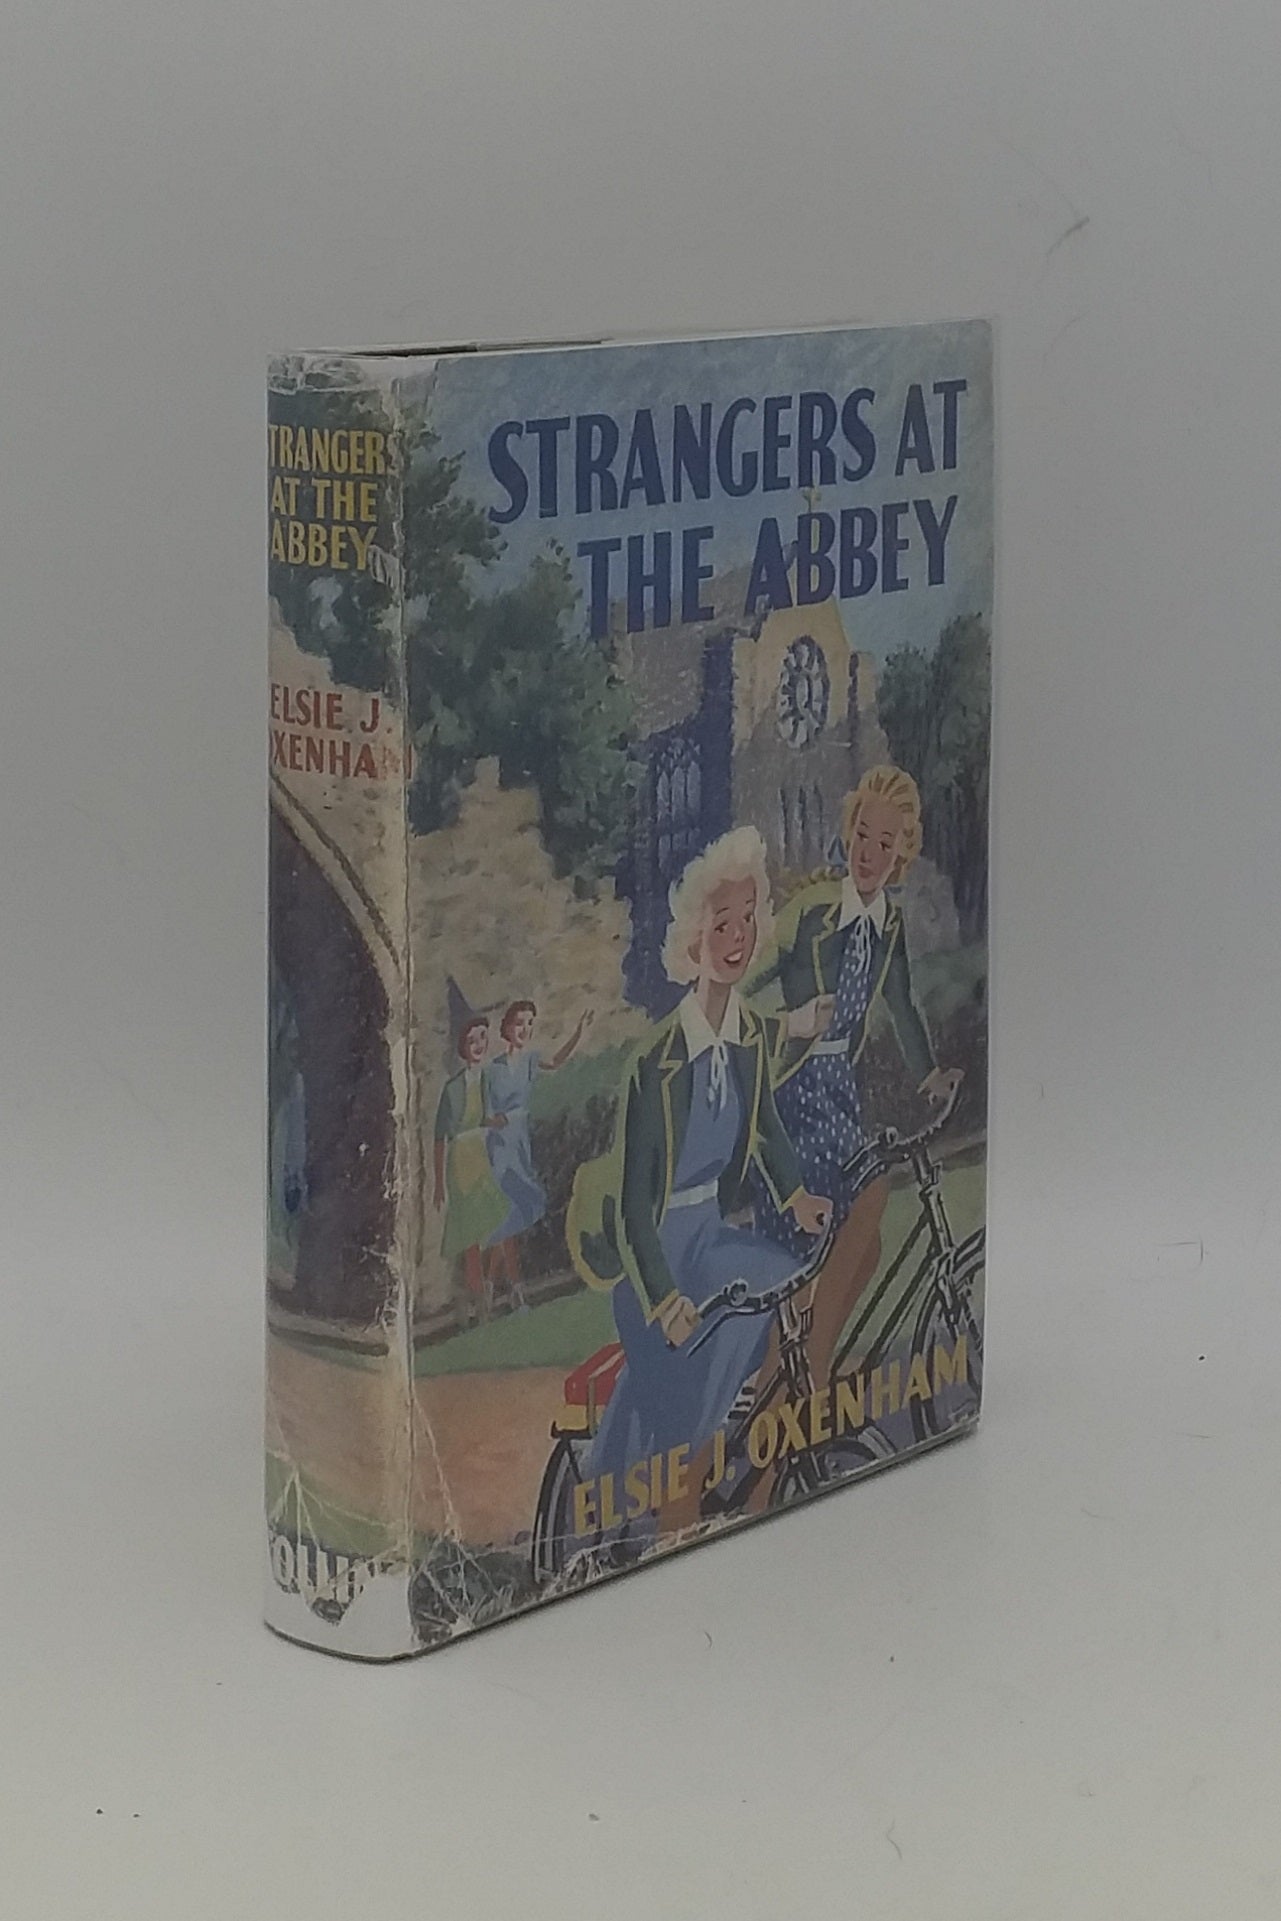 OXENHAM Elsie J. - Strangers at the Abbey